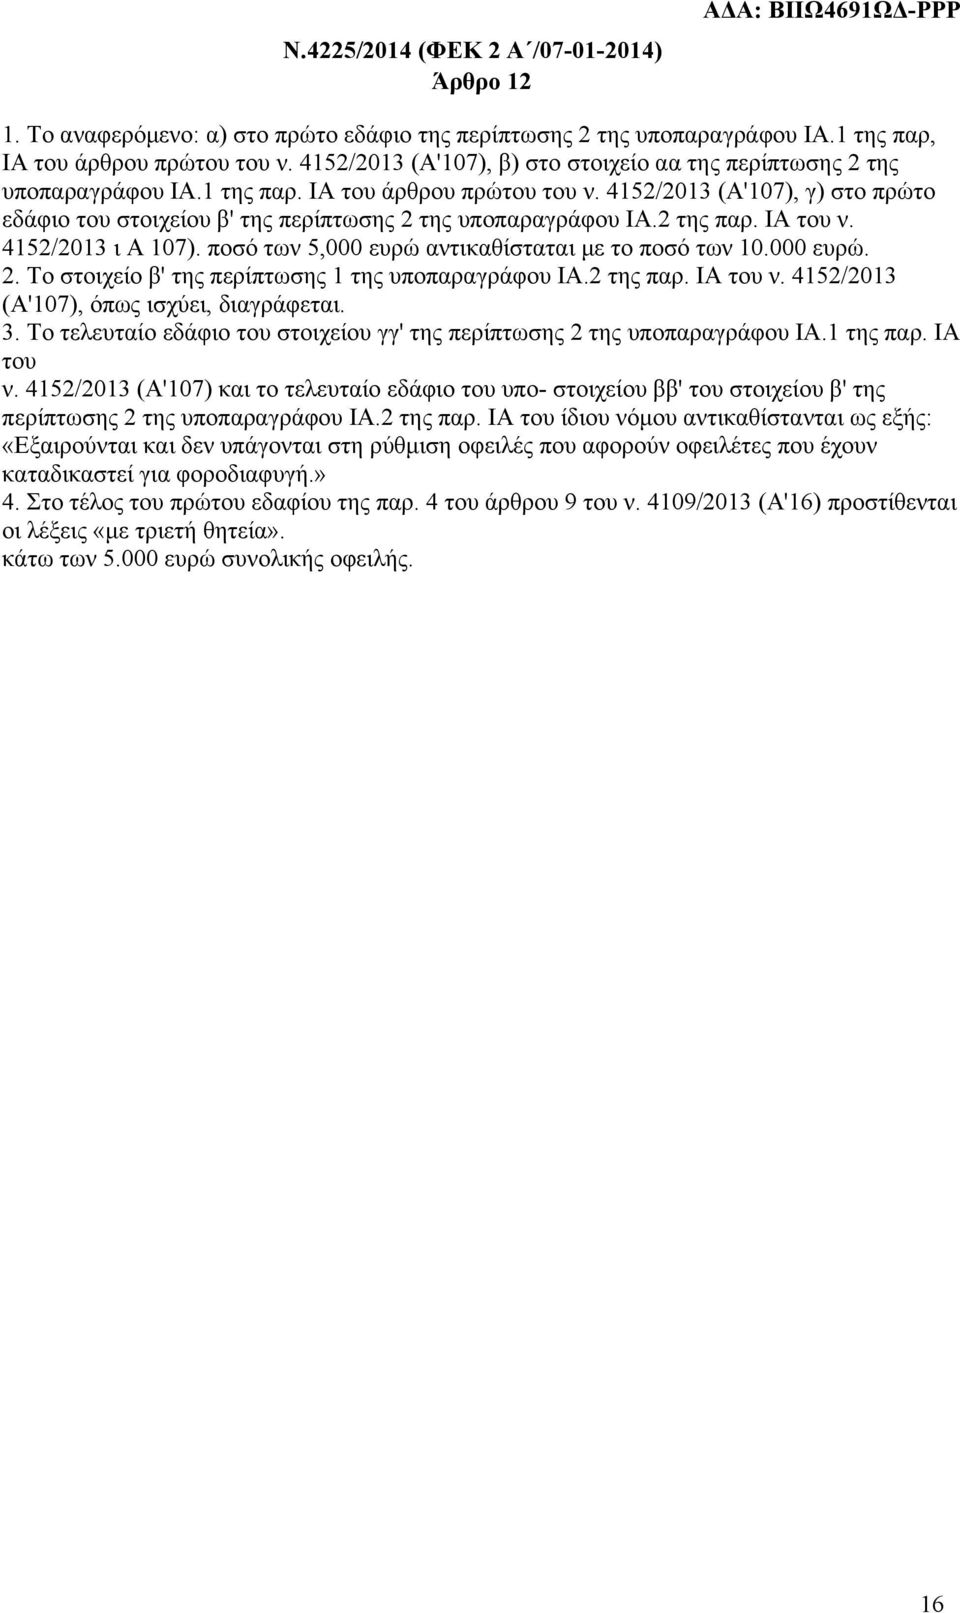 4152/2013 (Α'107), γ) στο πρώτο εδάφιο του στοιχείου β' της περίπτωσης 2 της υποπαραγράφου ΙΑ.2 της παρ. ΙΑ του ν. 4152/2013 ι Α 107). ποσό των 5,000 ευρώ αντικαθίσταται με το ποσό των 10.000 ευρώ. 2. Το στοιχείο β' της περίπτωσης 1 της υποπαραγράφου ΙΑ.